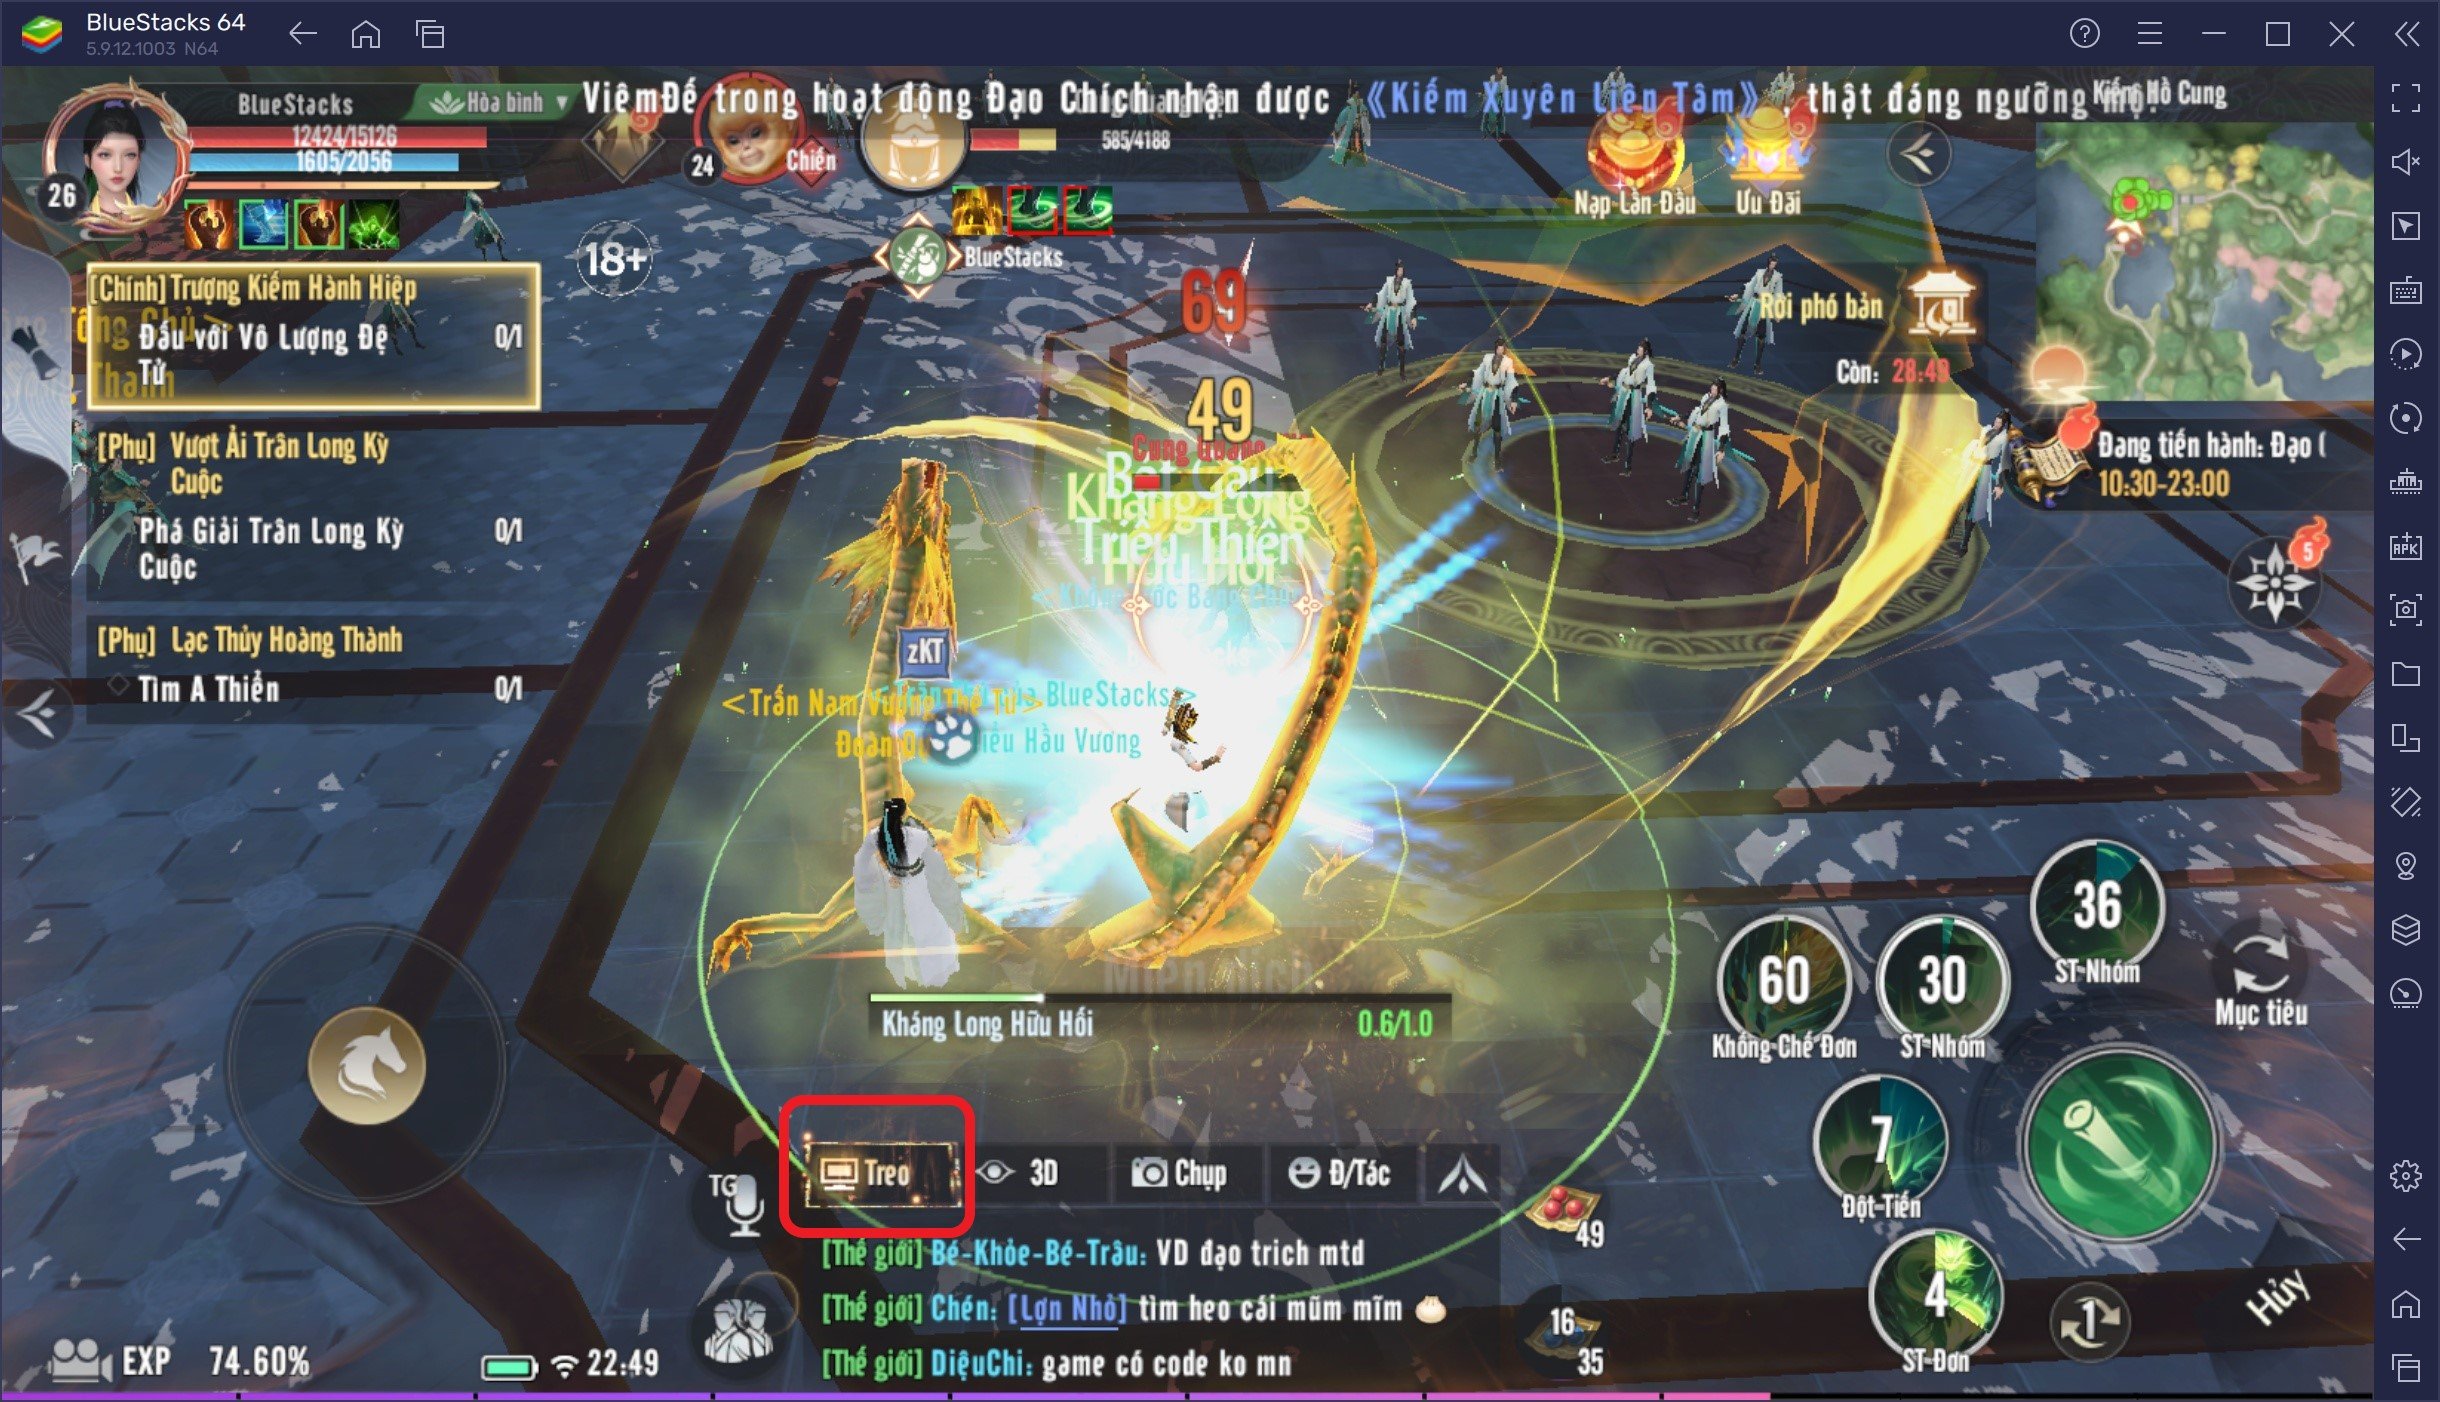 Hướng dẫn cơ bản chơi Thiên Long Bát Bộ 2 VNG trên PC